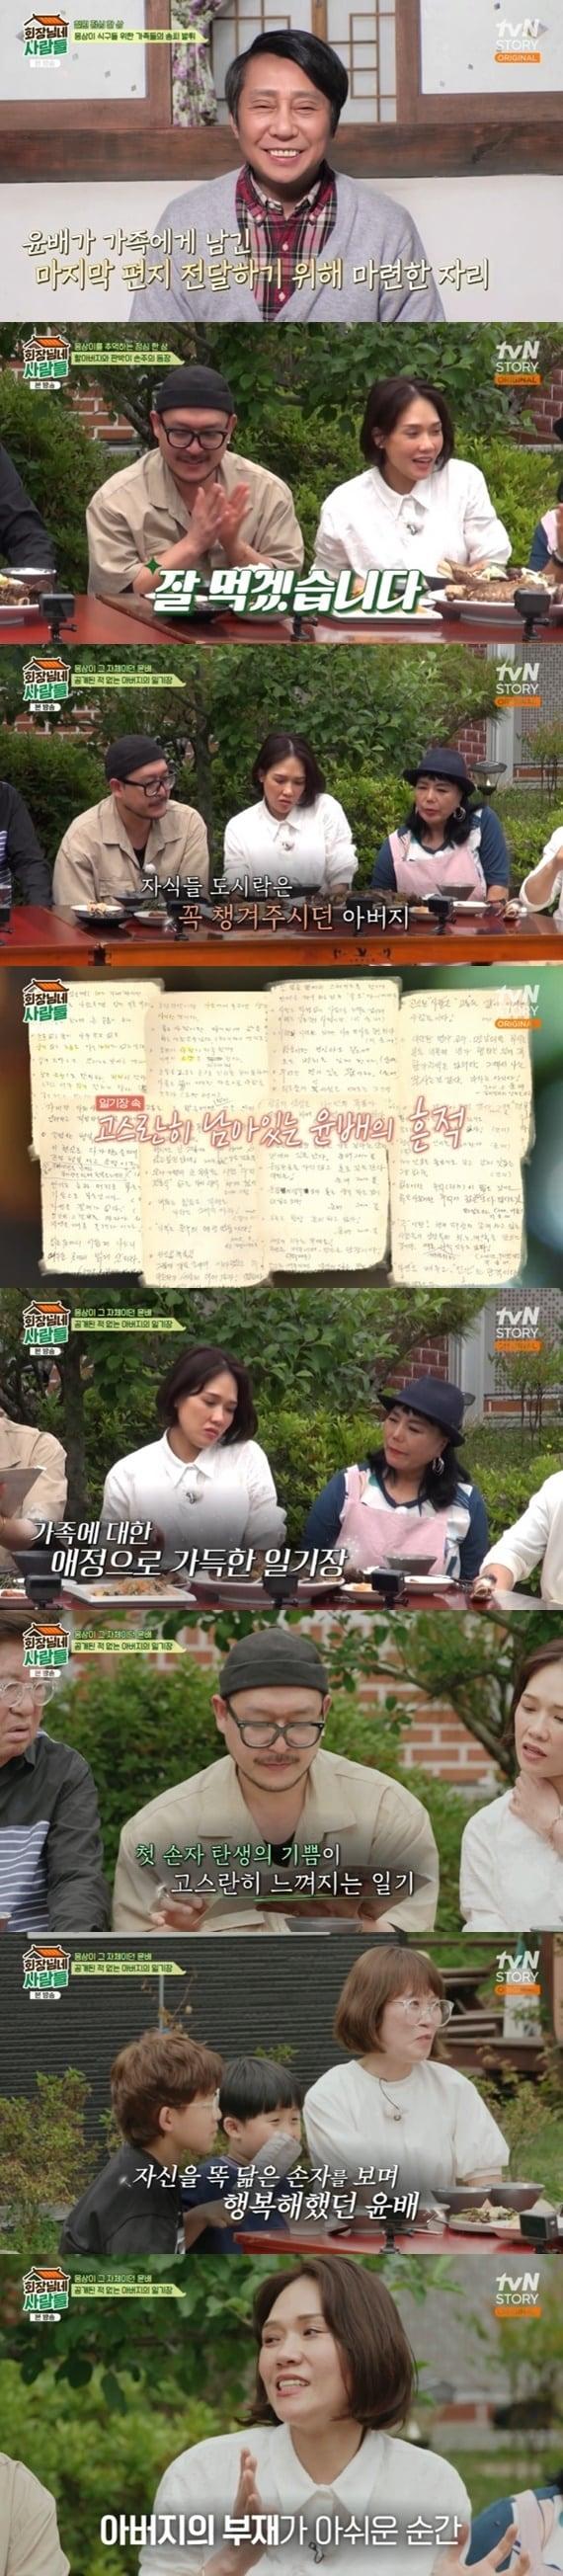 tvN STORY &#39;회장님네 사람들&#39; 캡처